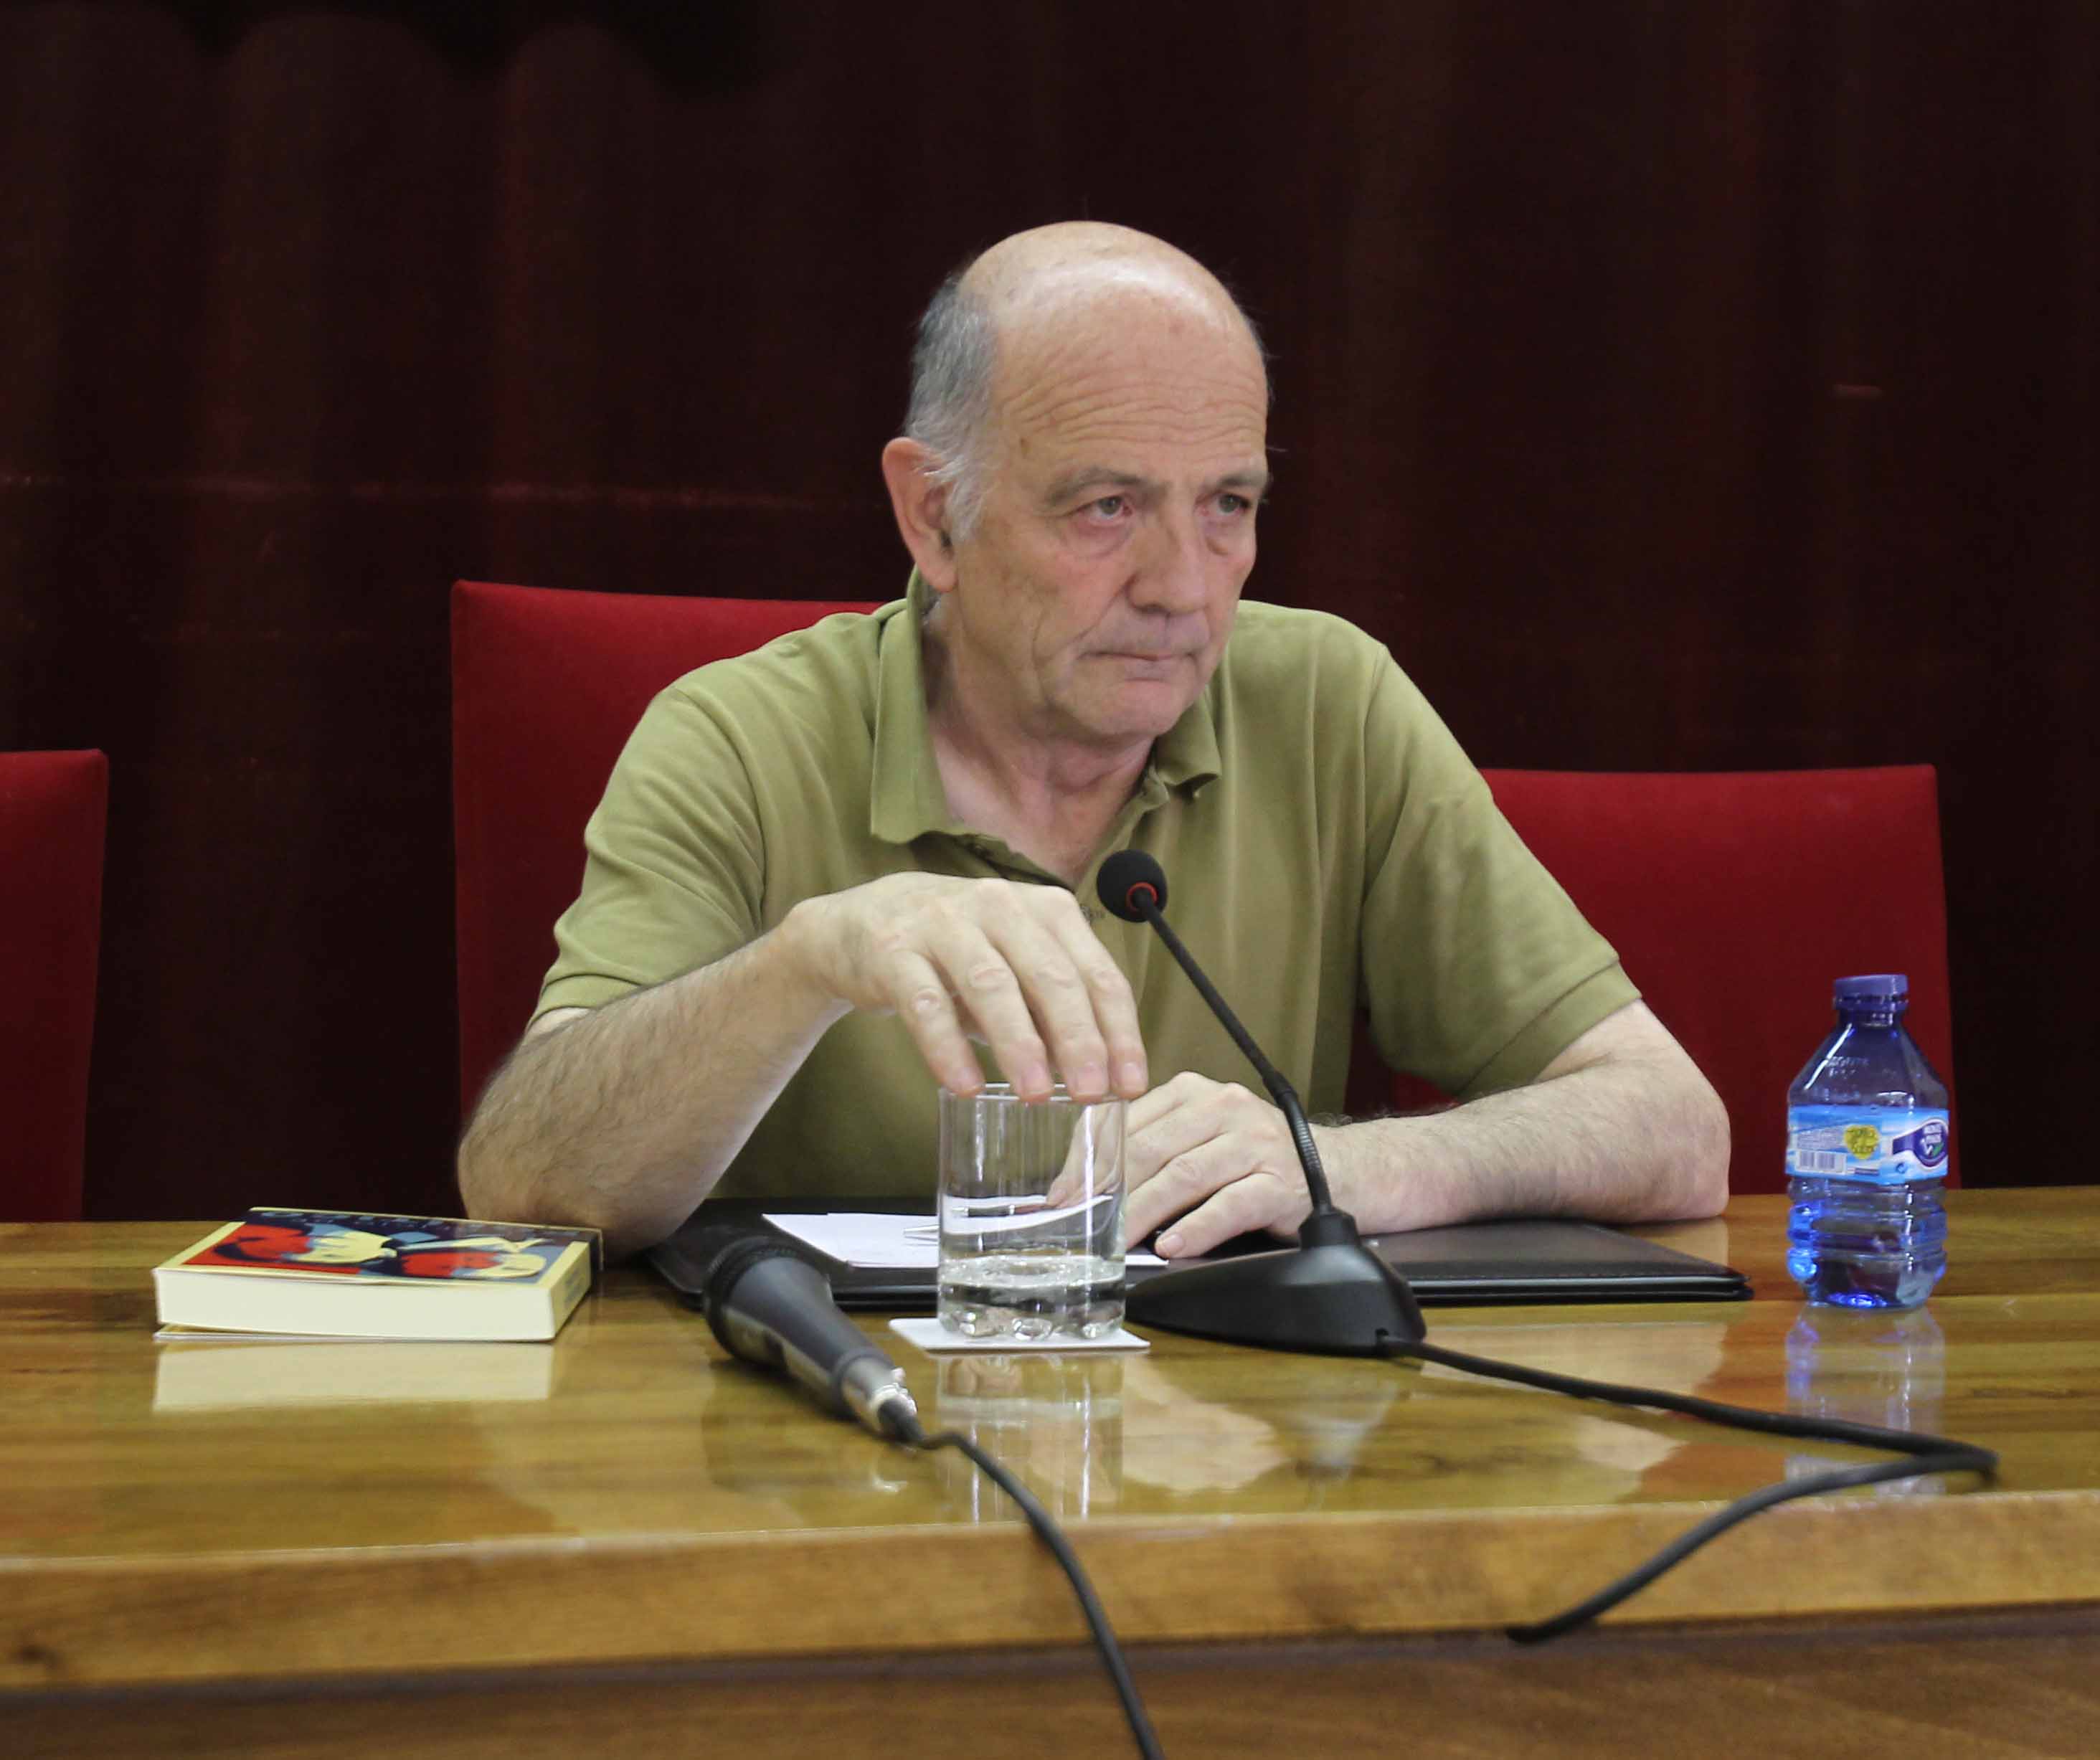 El catedrático de Ciencia Política, Manuel Alcántara, presenta su nuevo libro titulado ‘El oficio político’